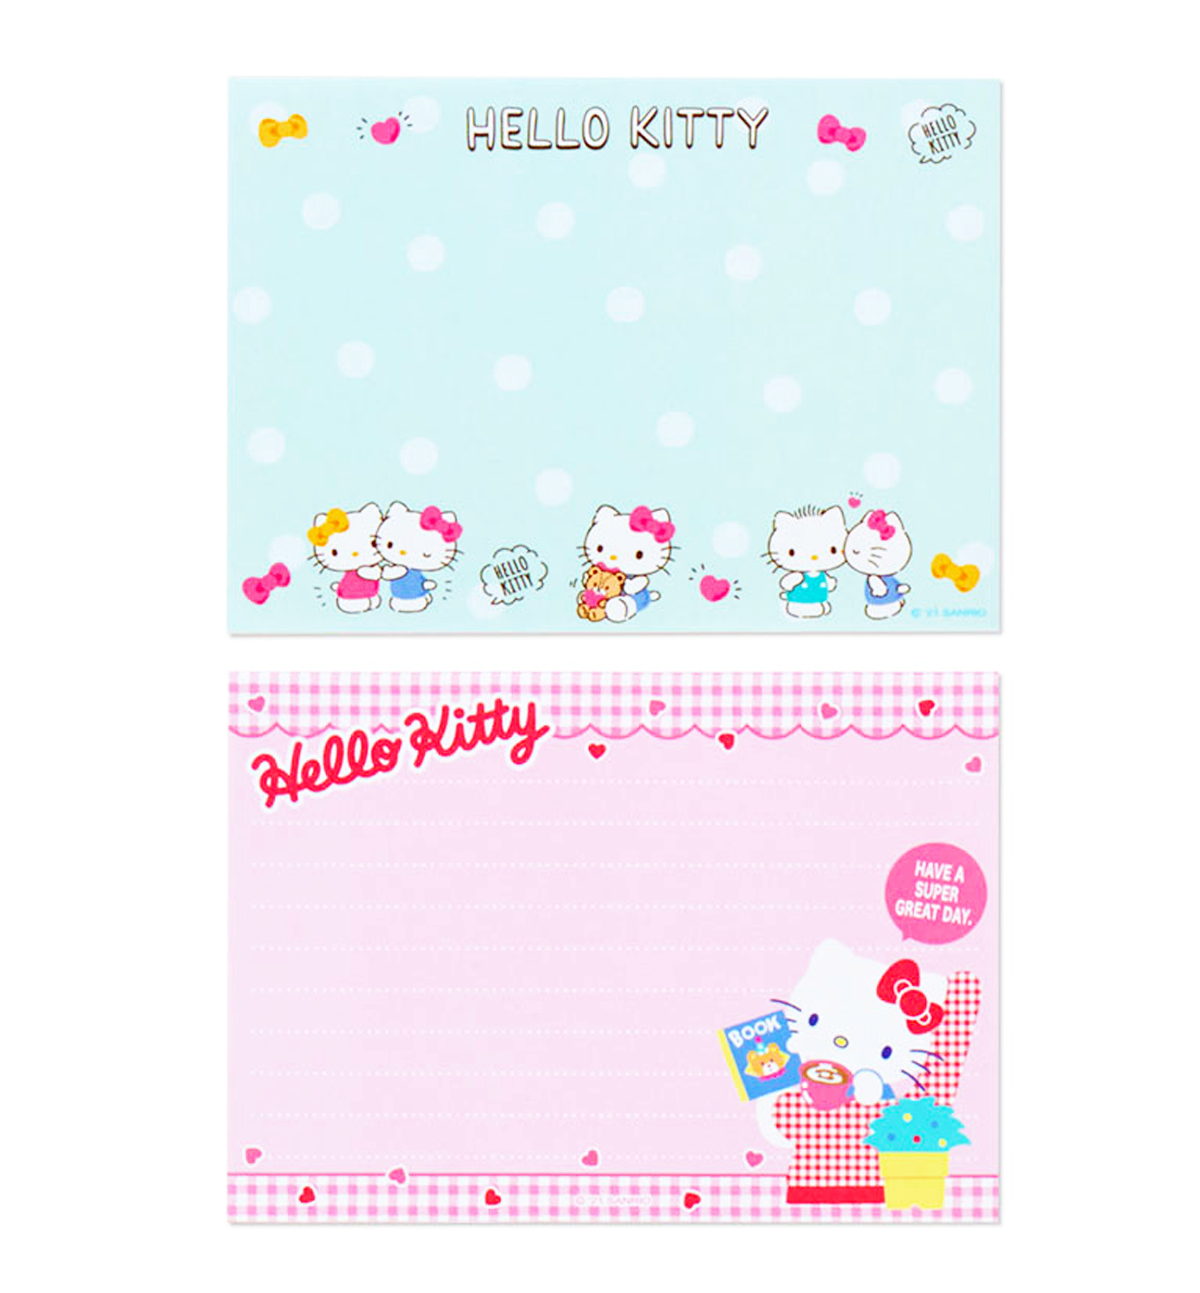 A6 Sanrio Hello Kitty Memopad [Music]